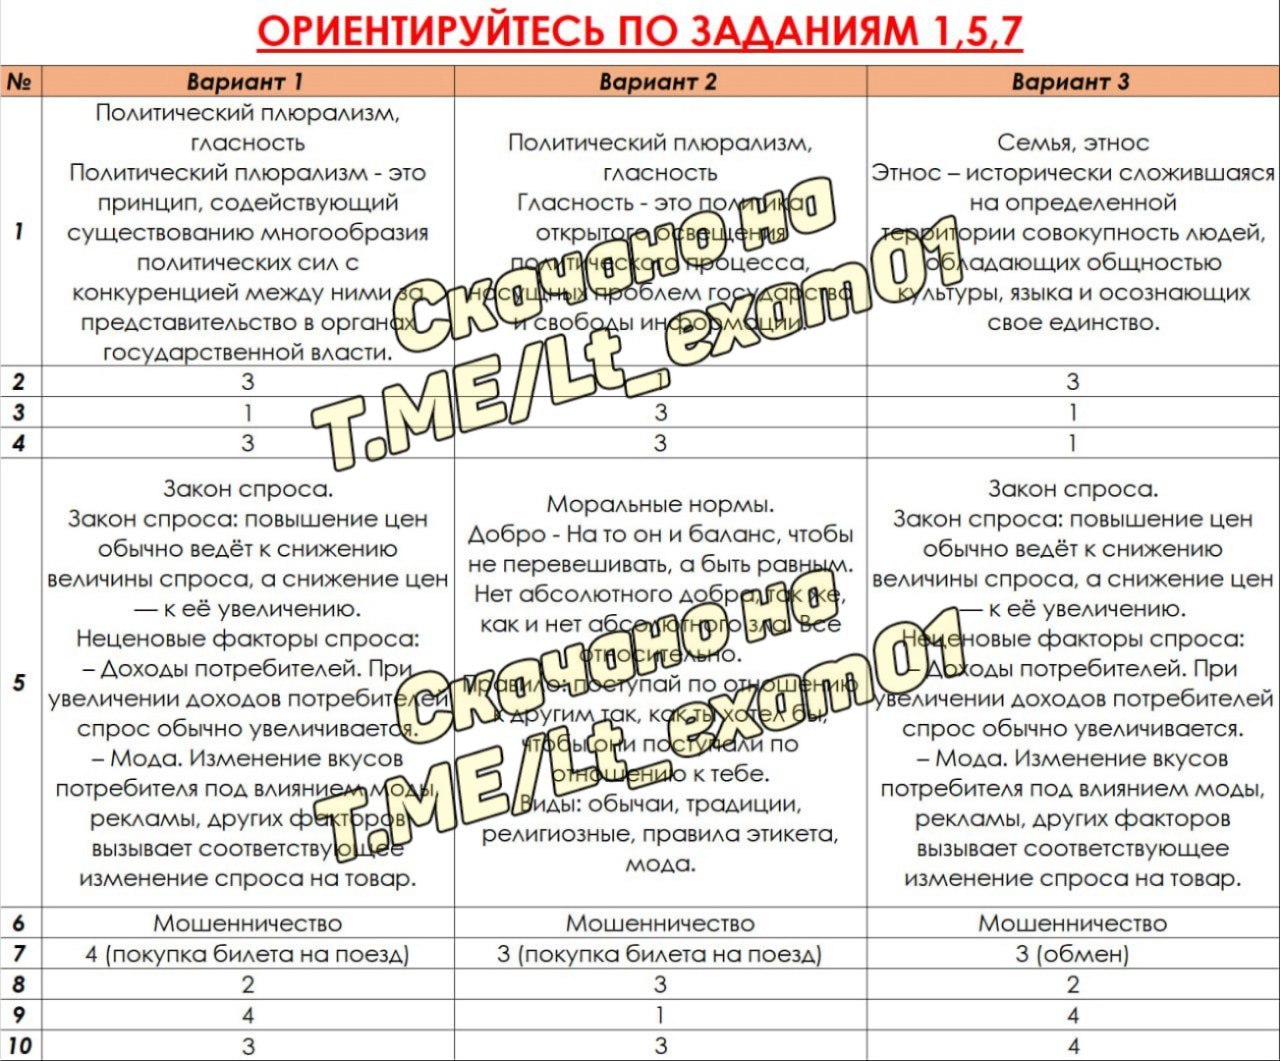 Русский язык огэ ответы телеграмм фото 112